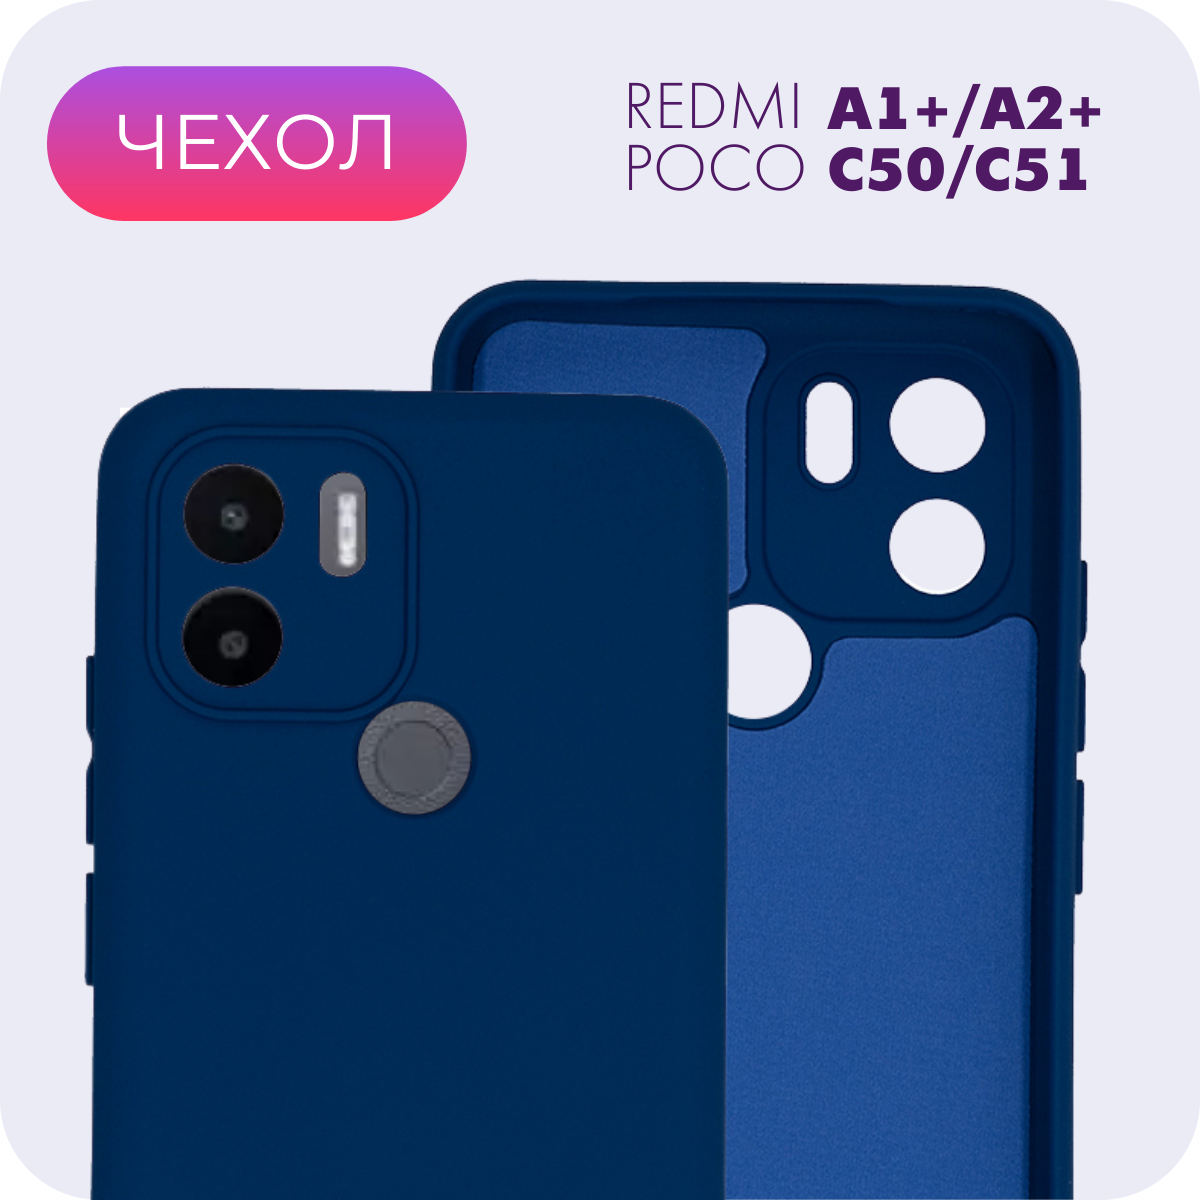 Противоударный матовый чехол с защитой камеры №8 Silicone Case для Xiaomi Redmi A1+/A2+/Poco C50/C51 (Ксиоми Редми А1+/А2+/Поко Ц50/Ц51)